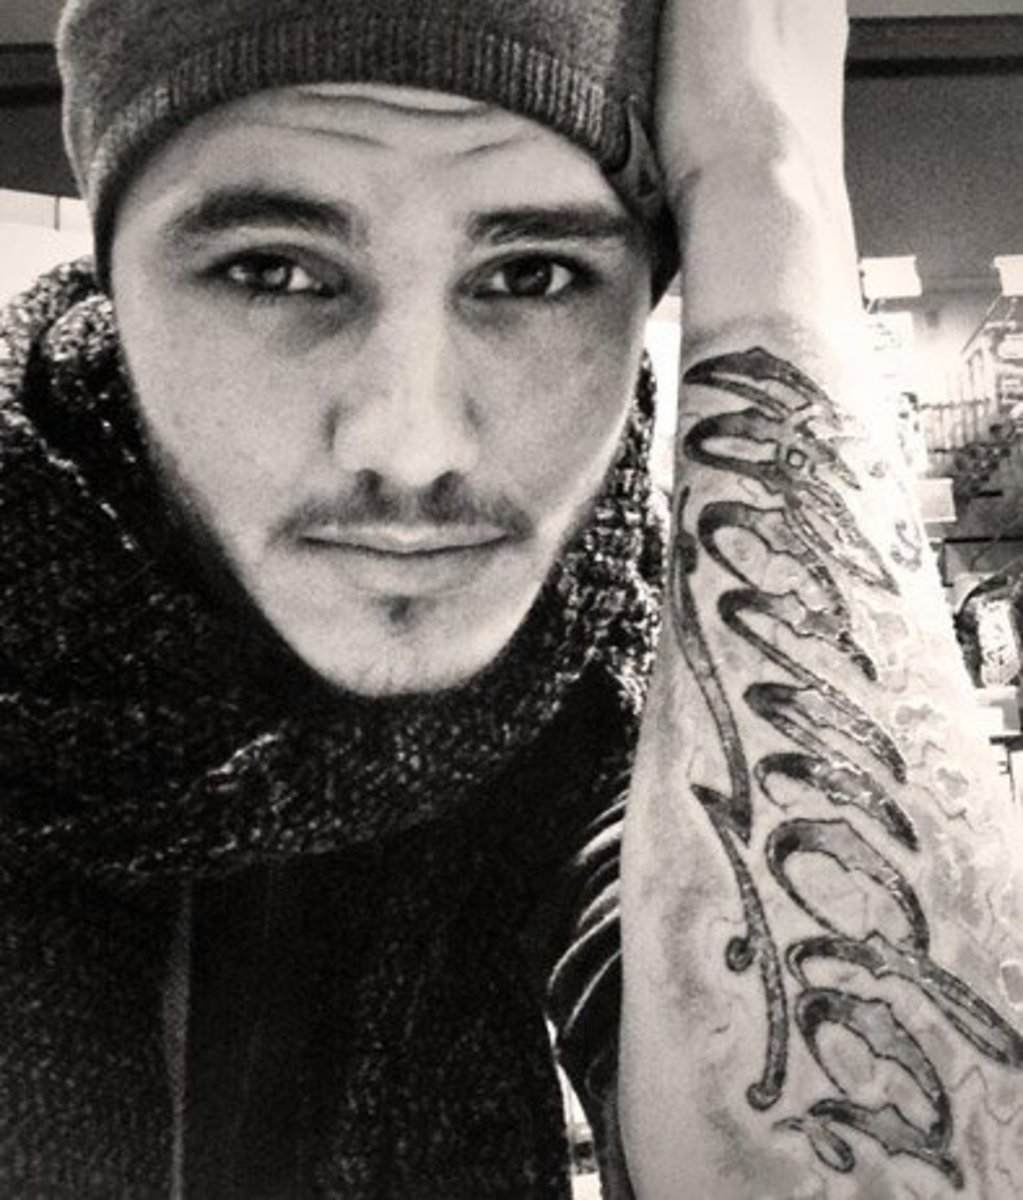 Ο Mauro Icardi κάλυψε πλήρως την περιοχή του κορμού του με αυτό το τελευταίο τατουάζ. Φωτογραφία: Instagram.